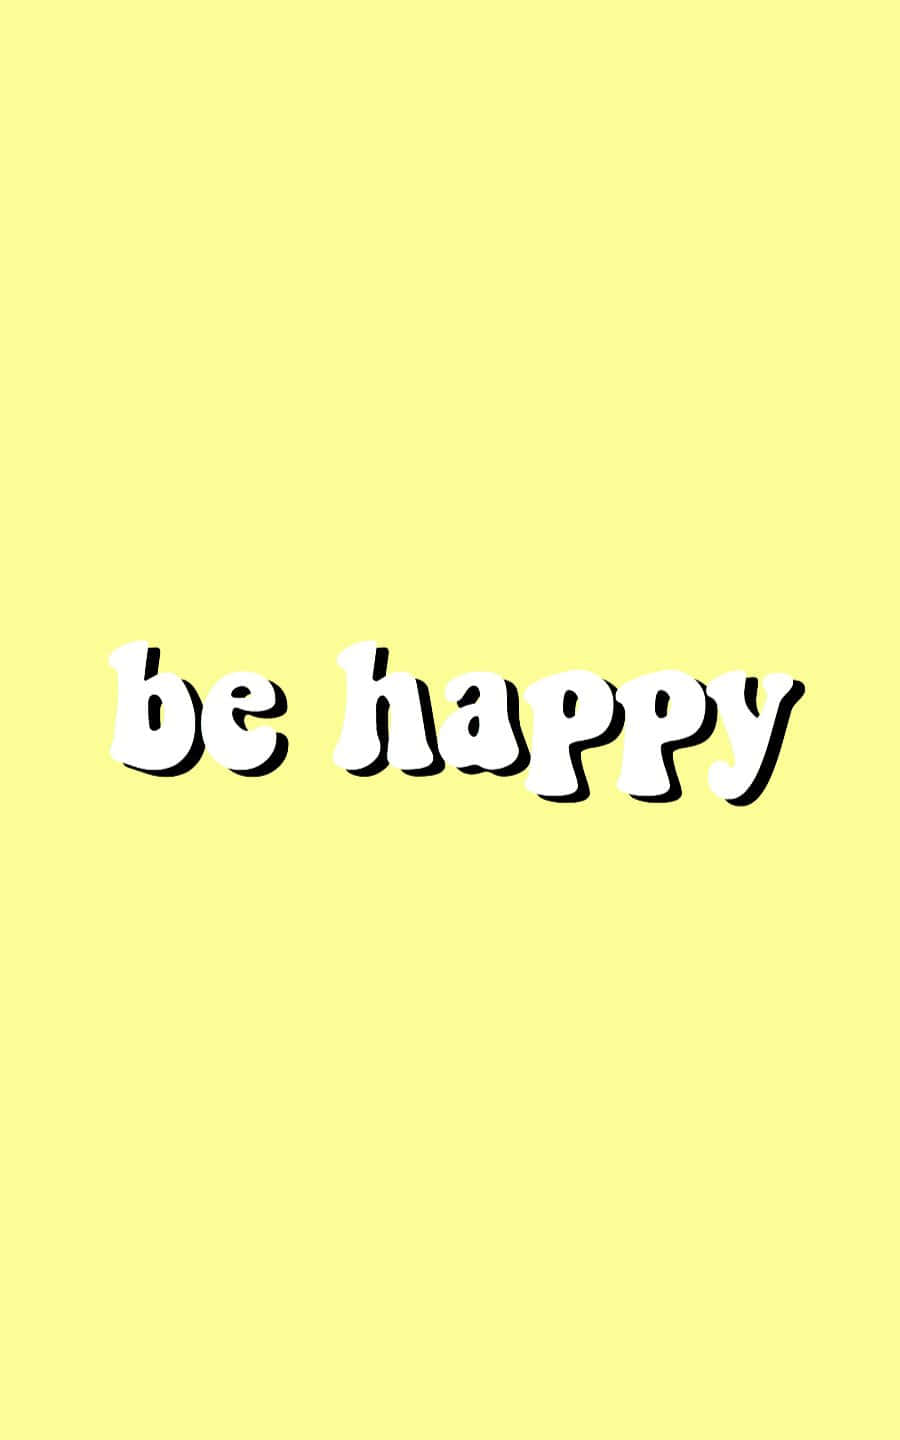 Vær glad, vær positiv Wallpaper